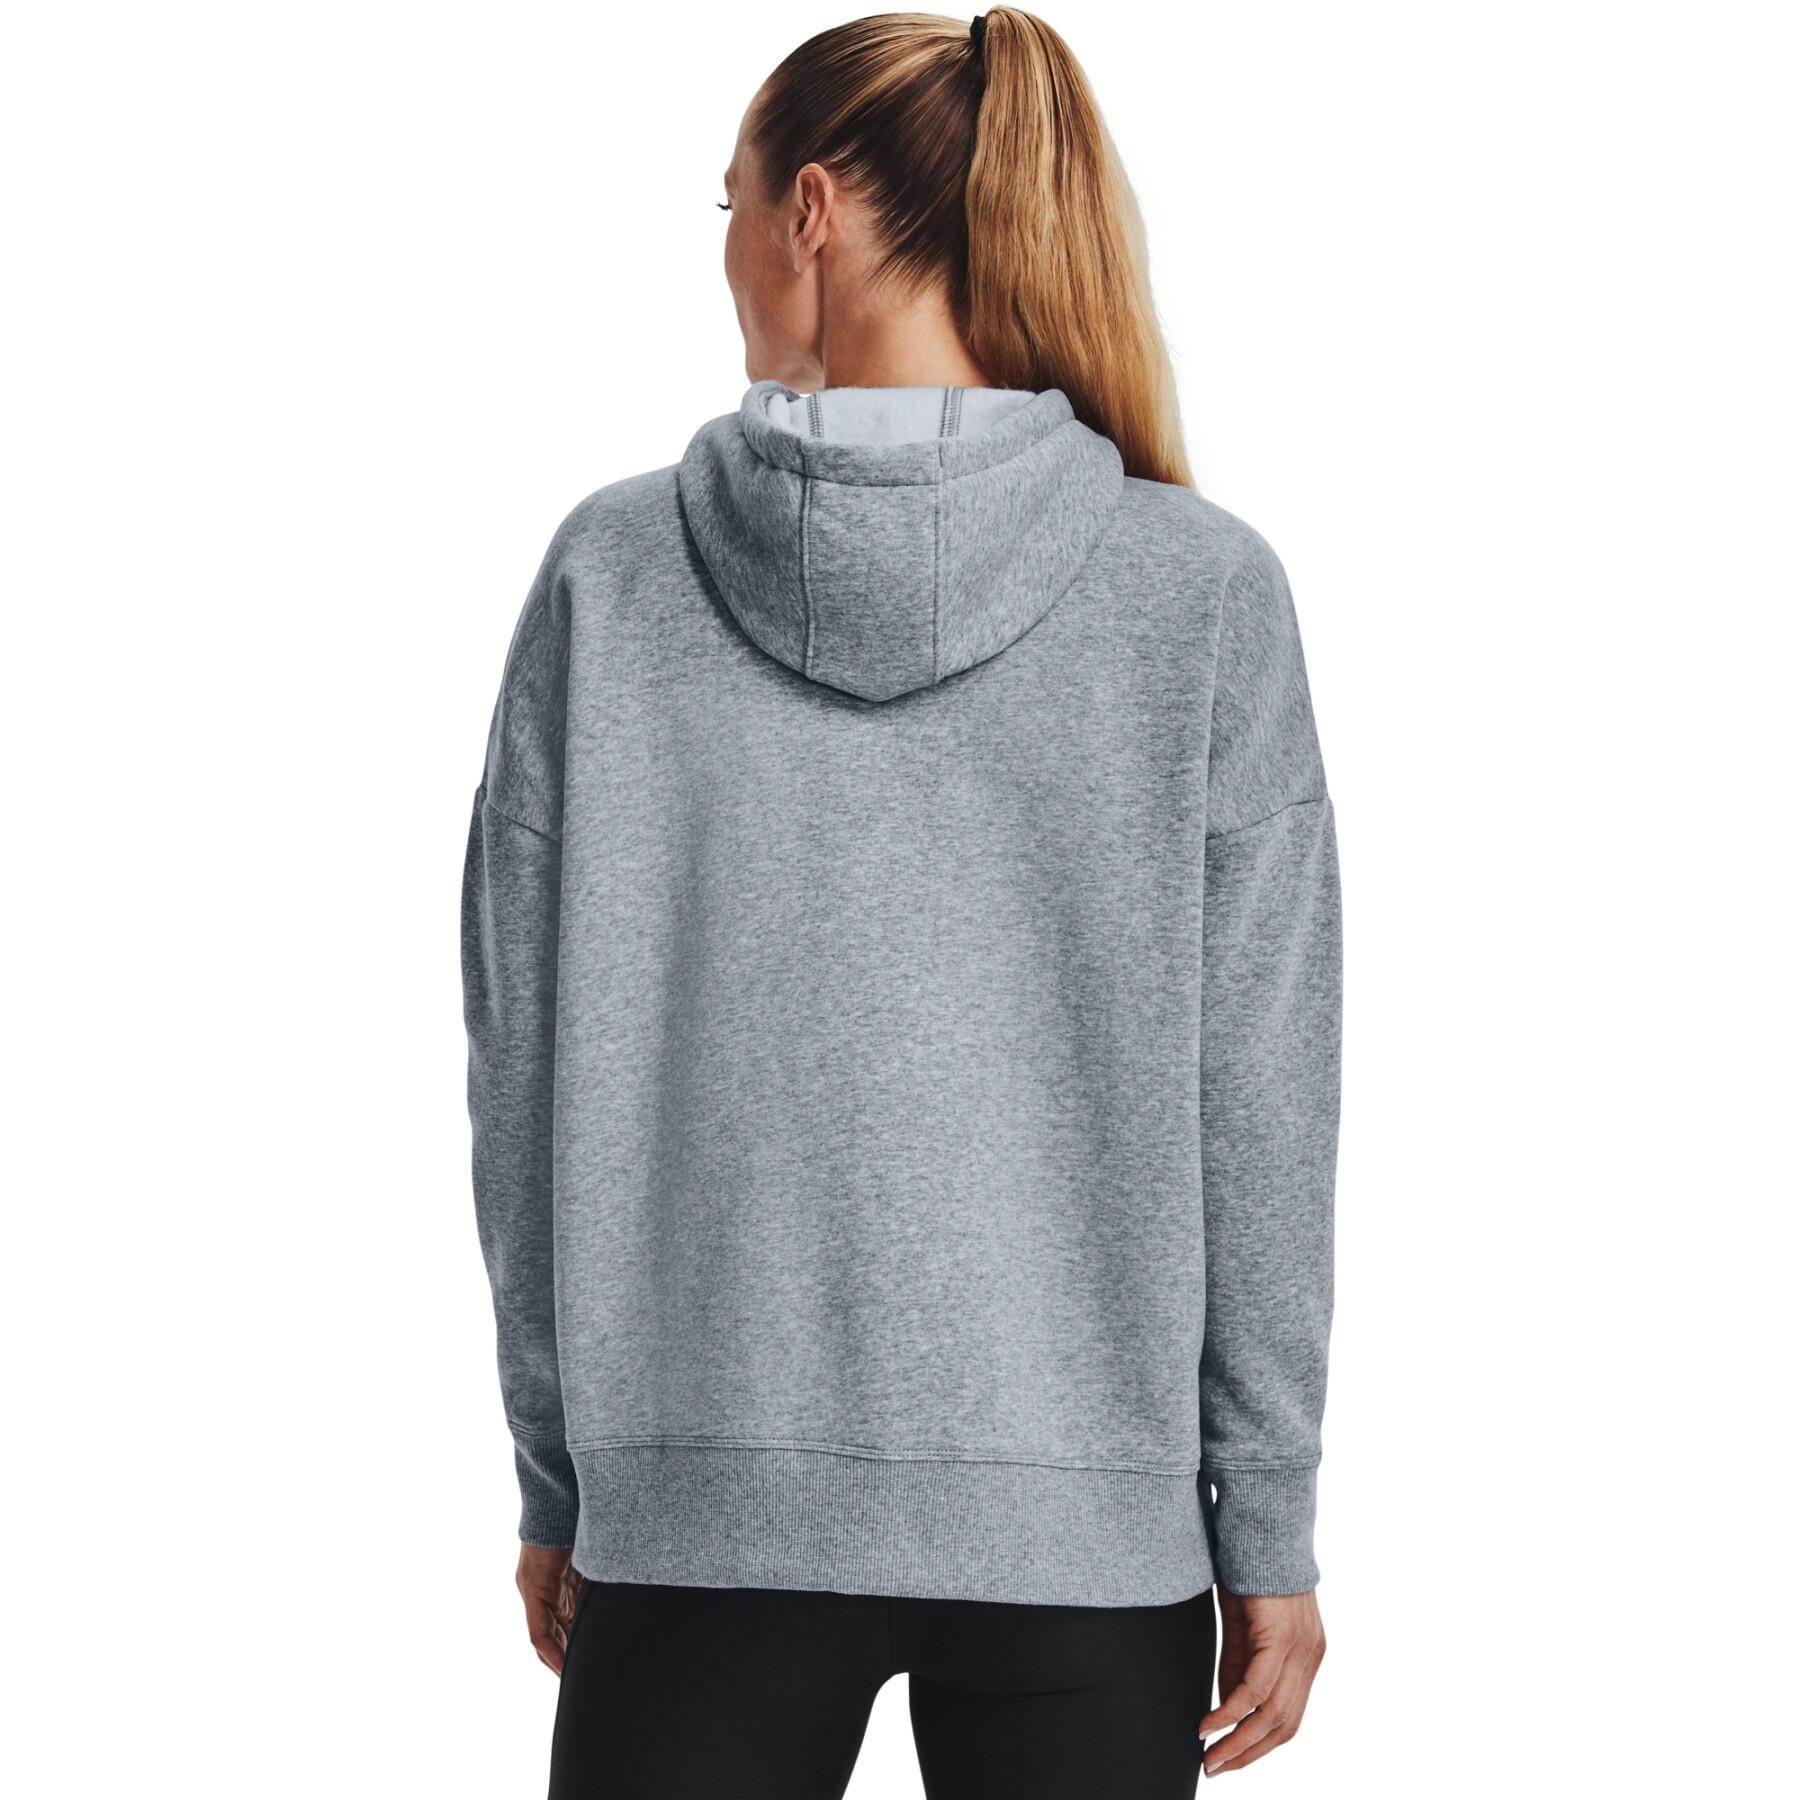 Women's full-zip hoodie Under Armour Rival fleece